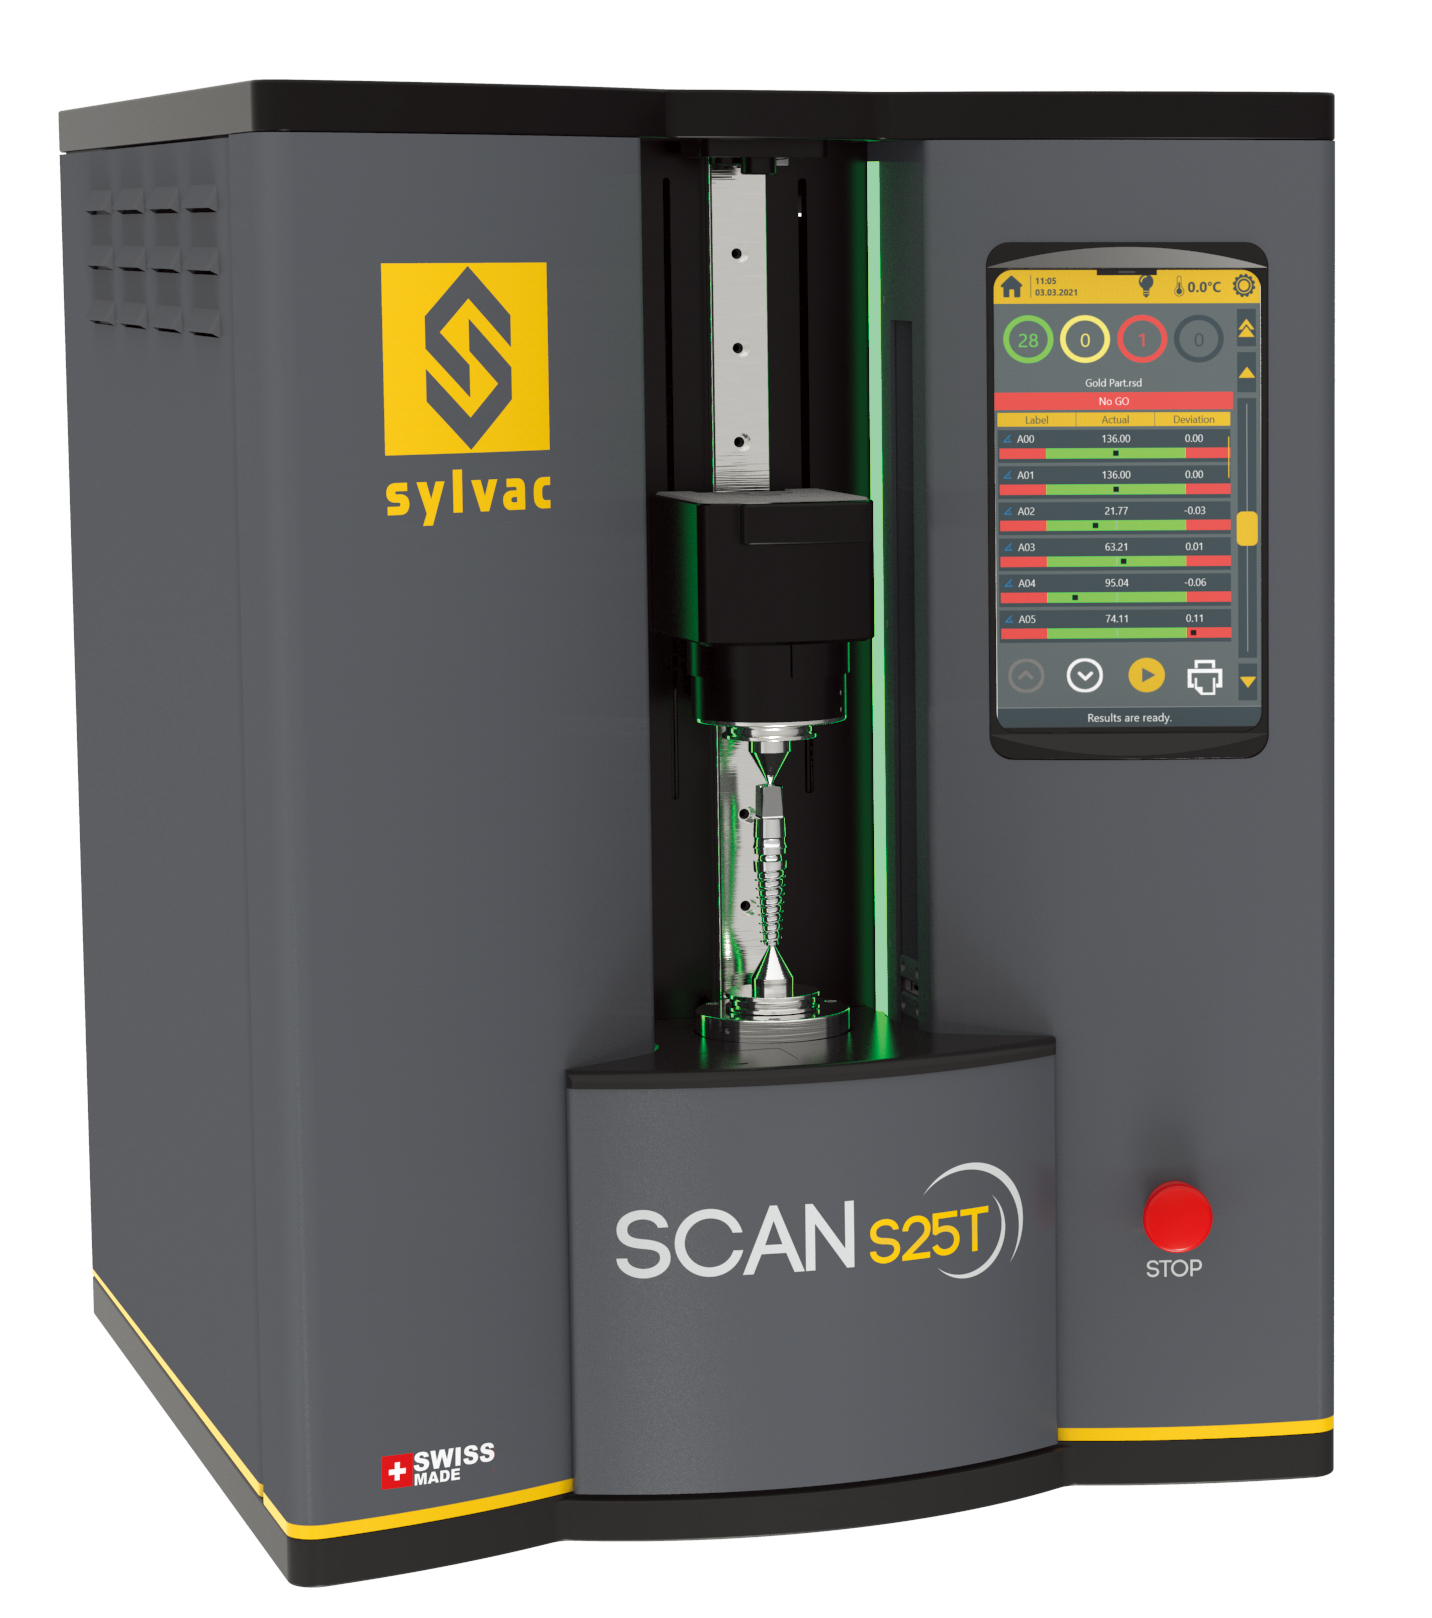 SylvacScan S25T光学轴类扫描仪